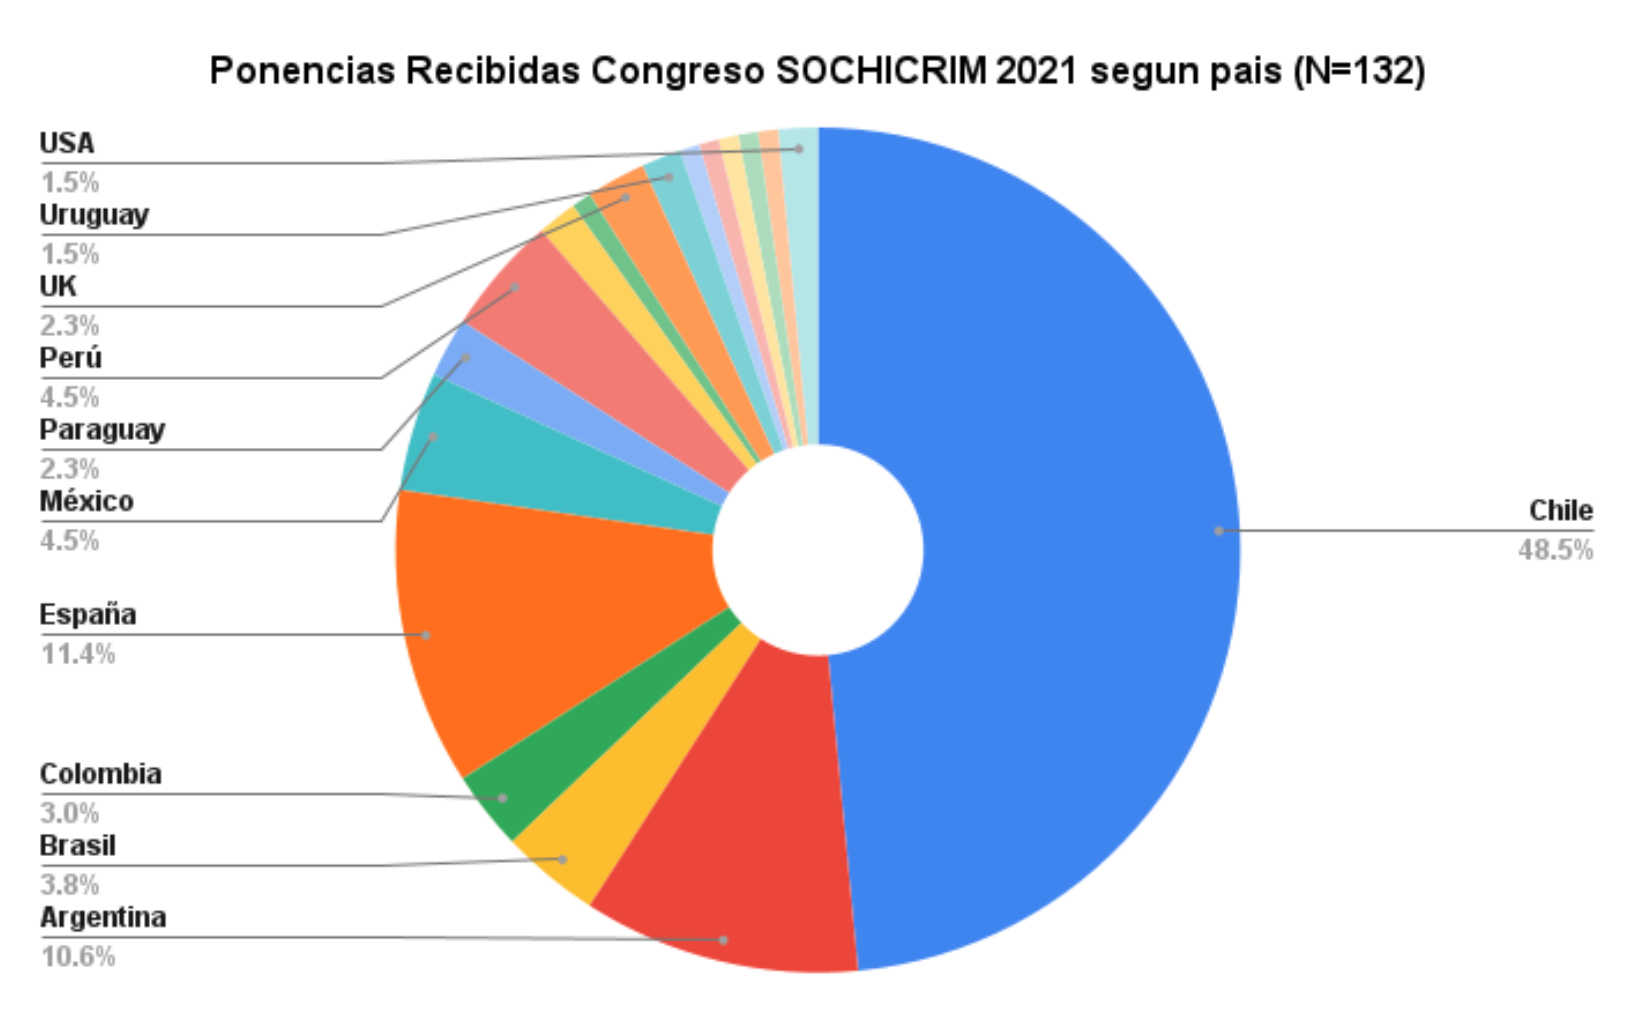 Ponencias recibidas Congreso SOCHICRIM 2021